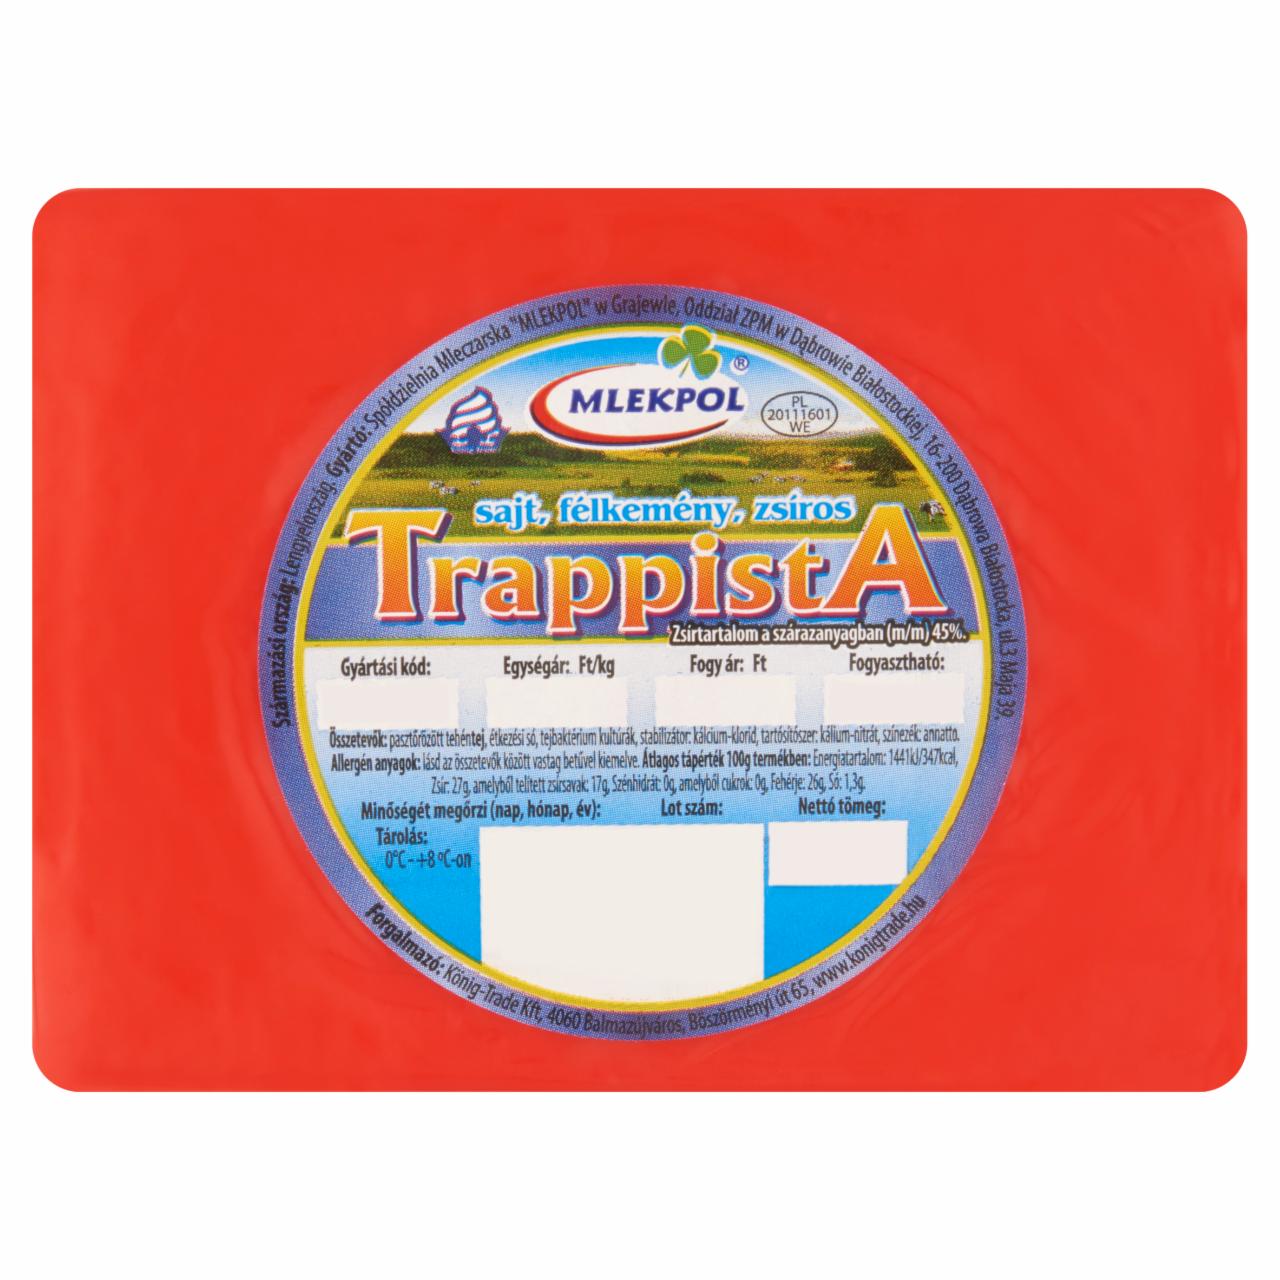 Képek - Mlekpol félkemény, zsíros trappista sajt